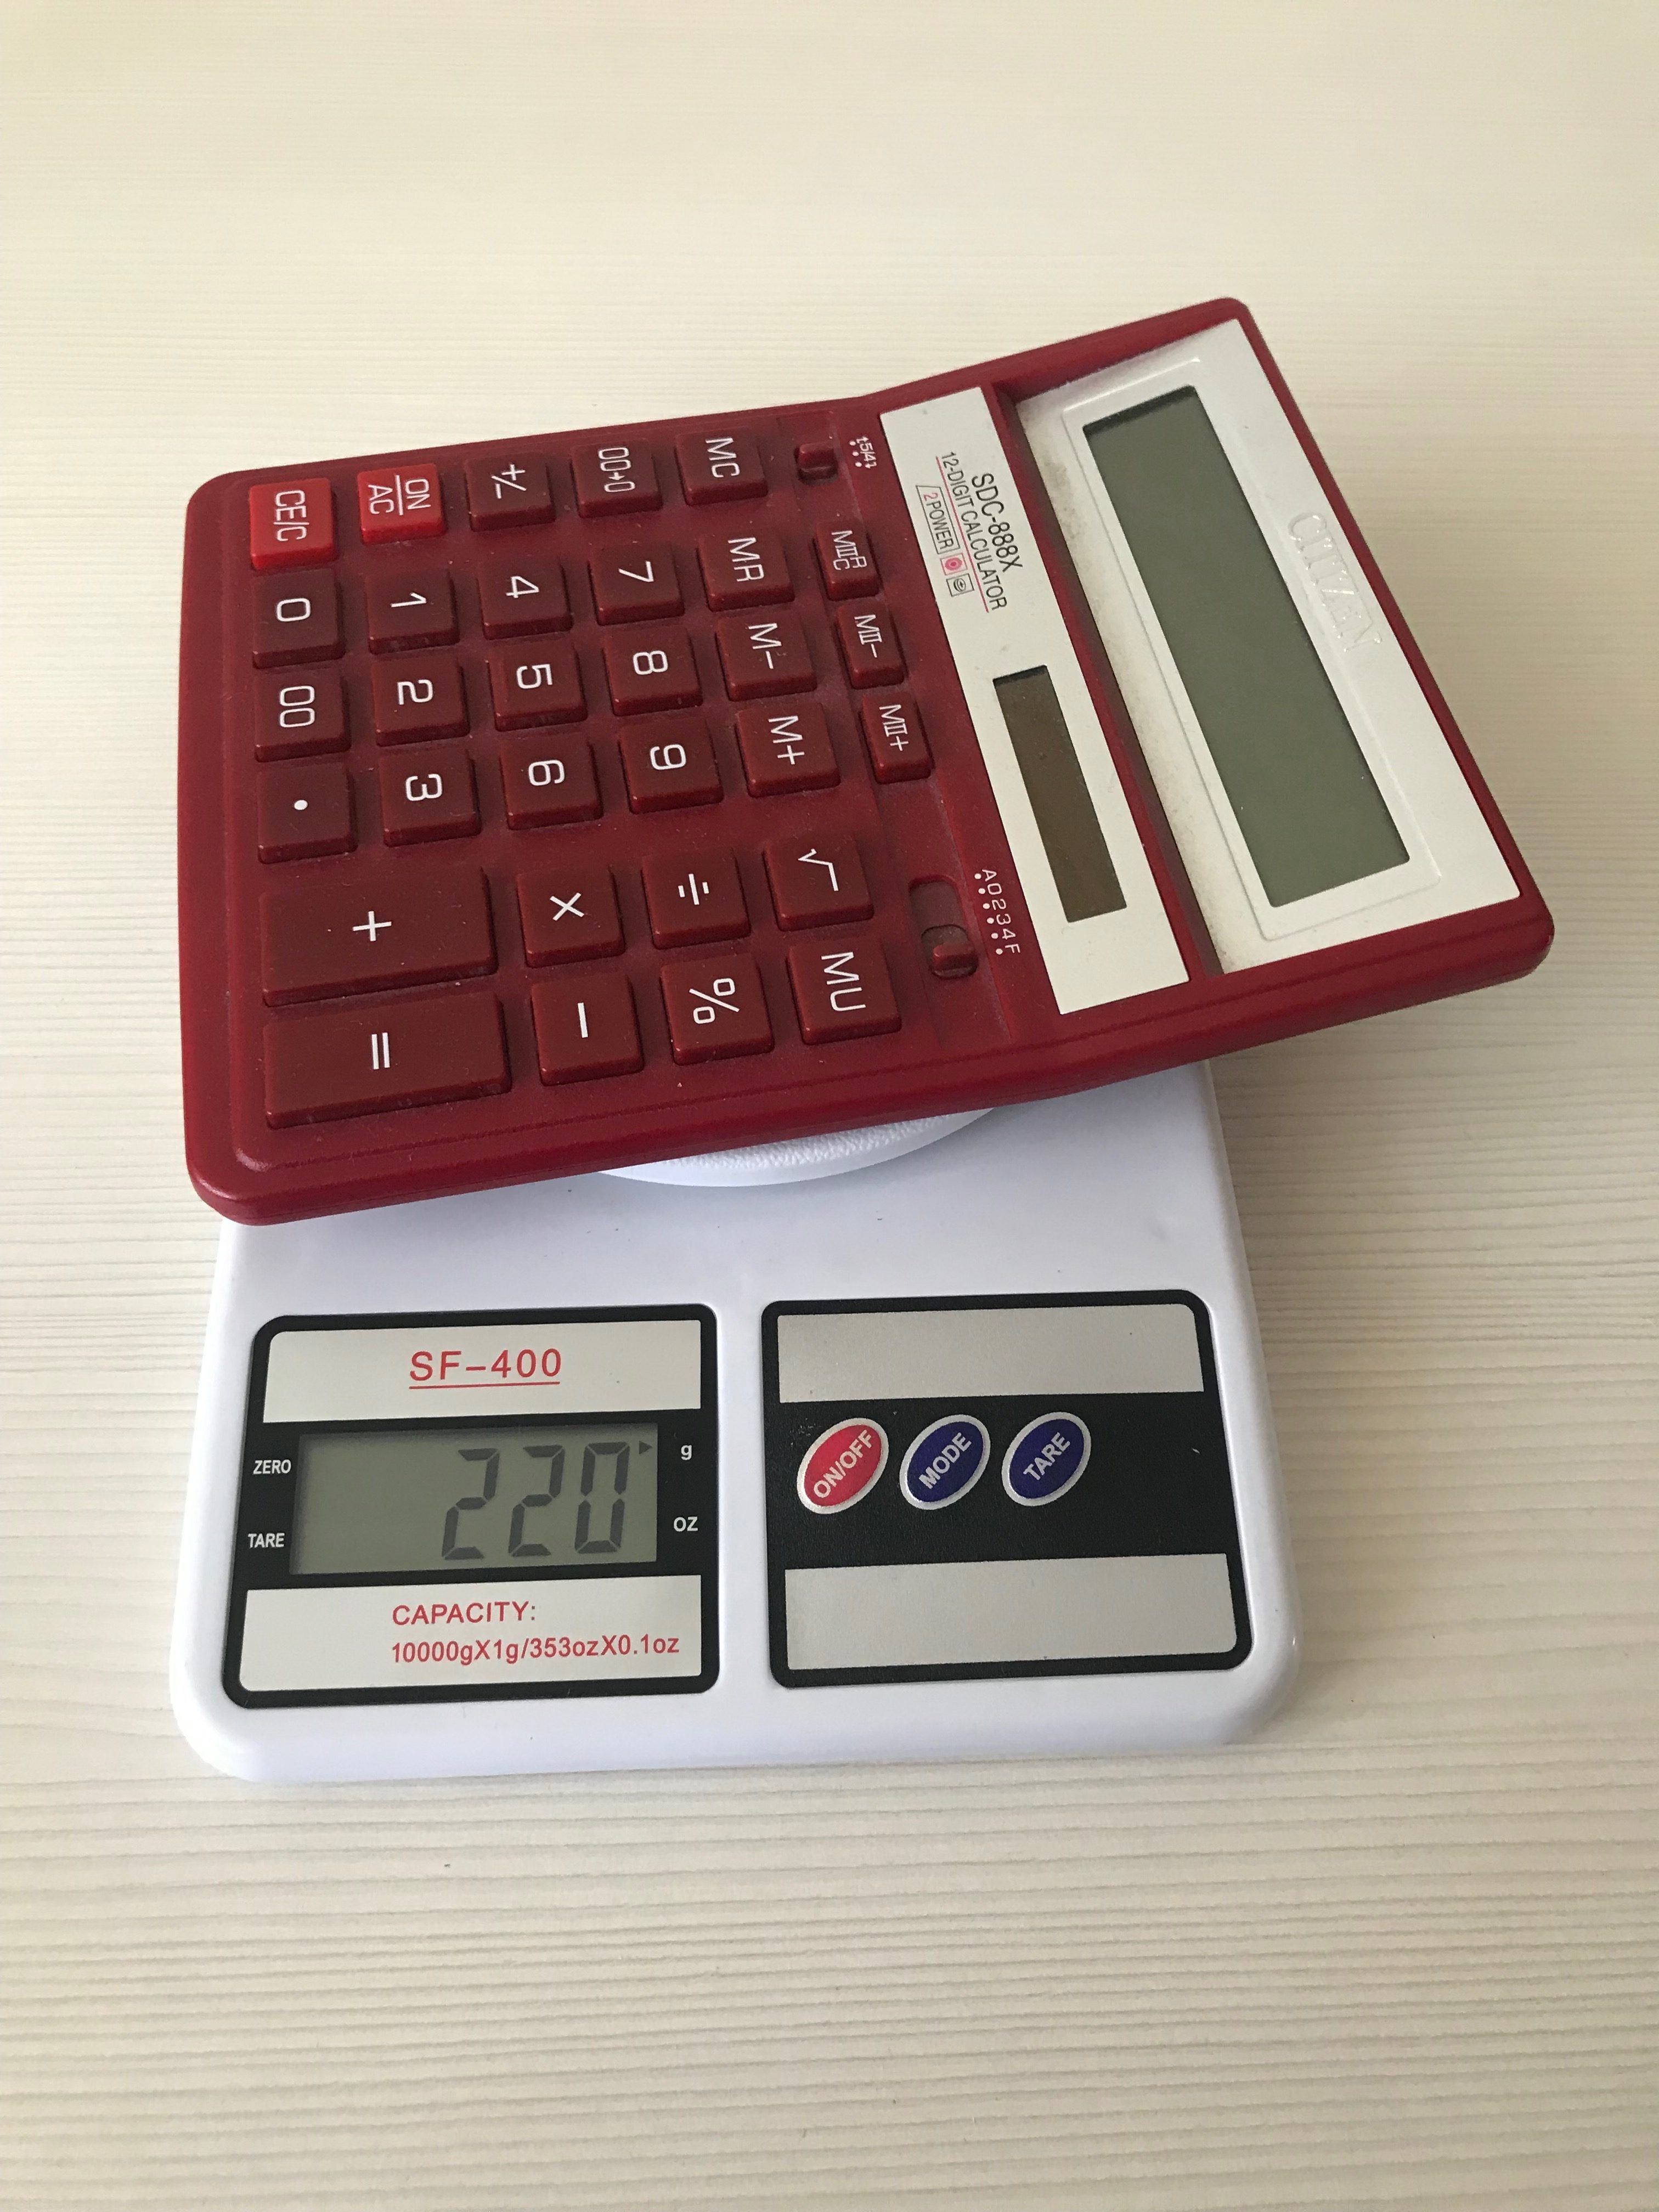 Berapa berat kalkulator ini?